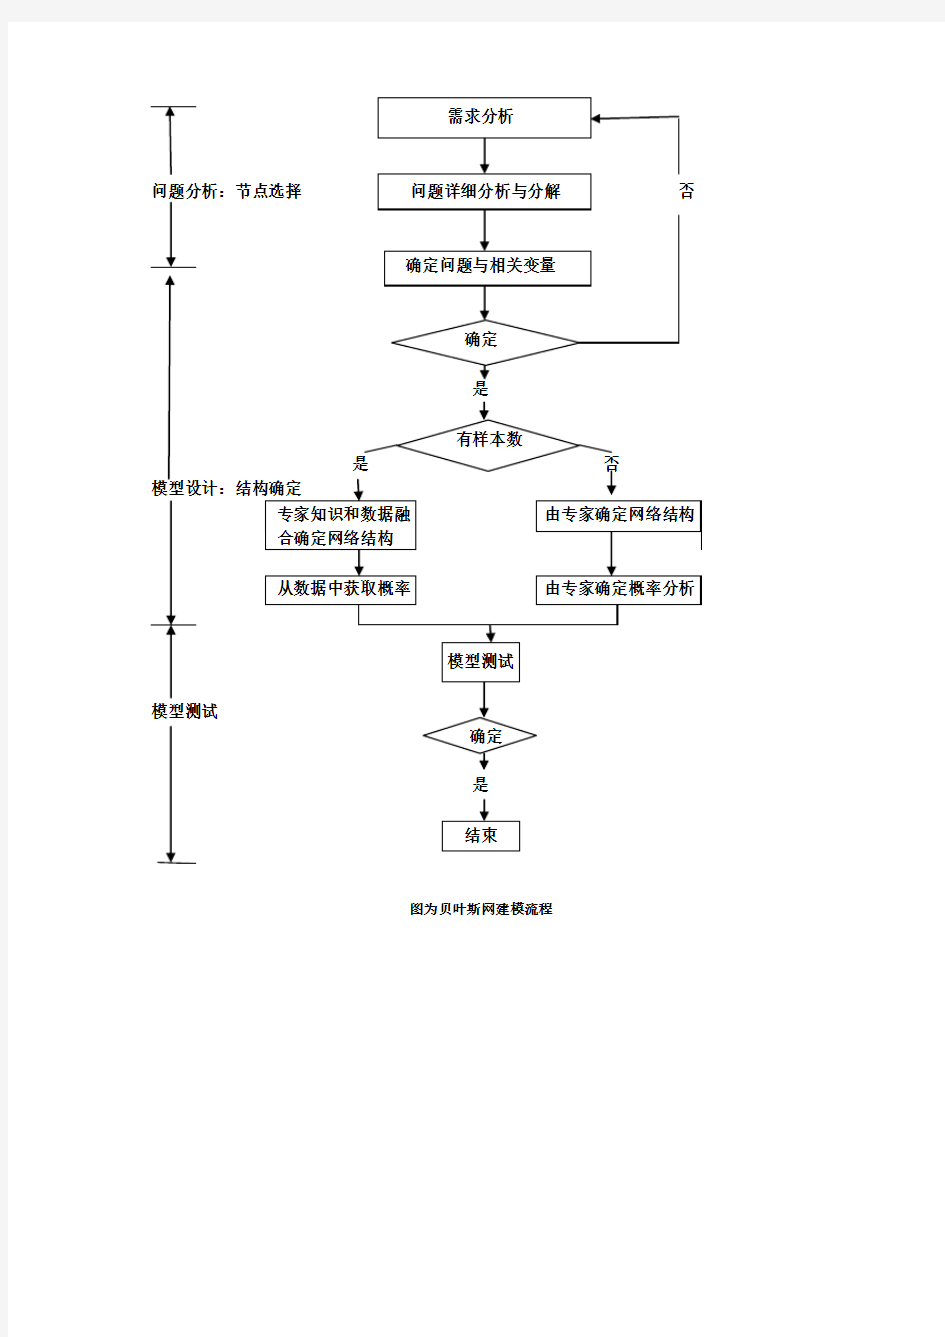 贝叶斯网络流程图